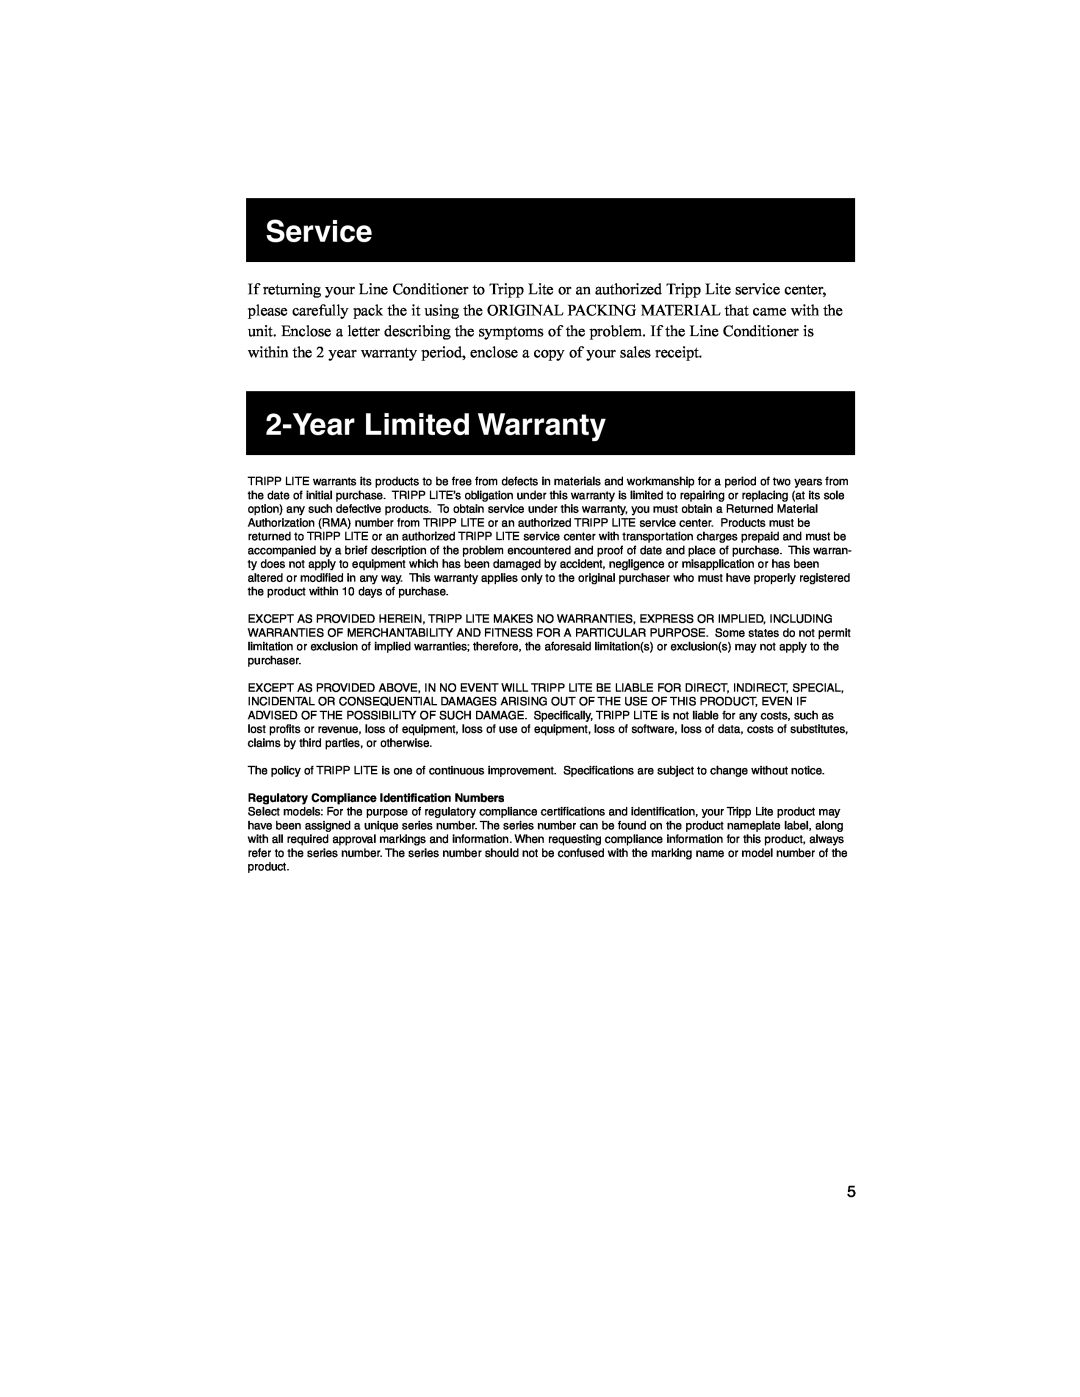 Tripp Lite 93-2268_EN owner manual Service, Year Limited Warranty, Regulatory Compliance Identification Numbers 